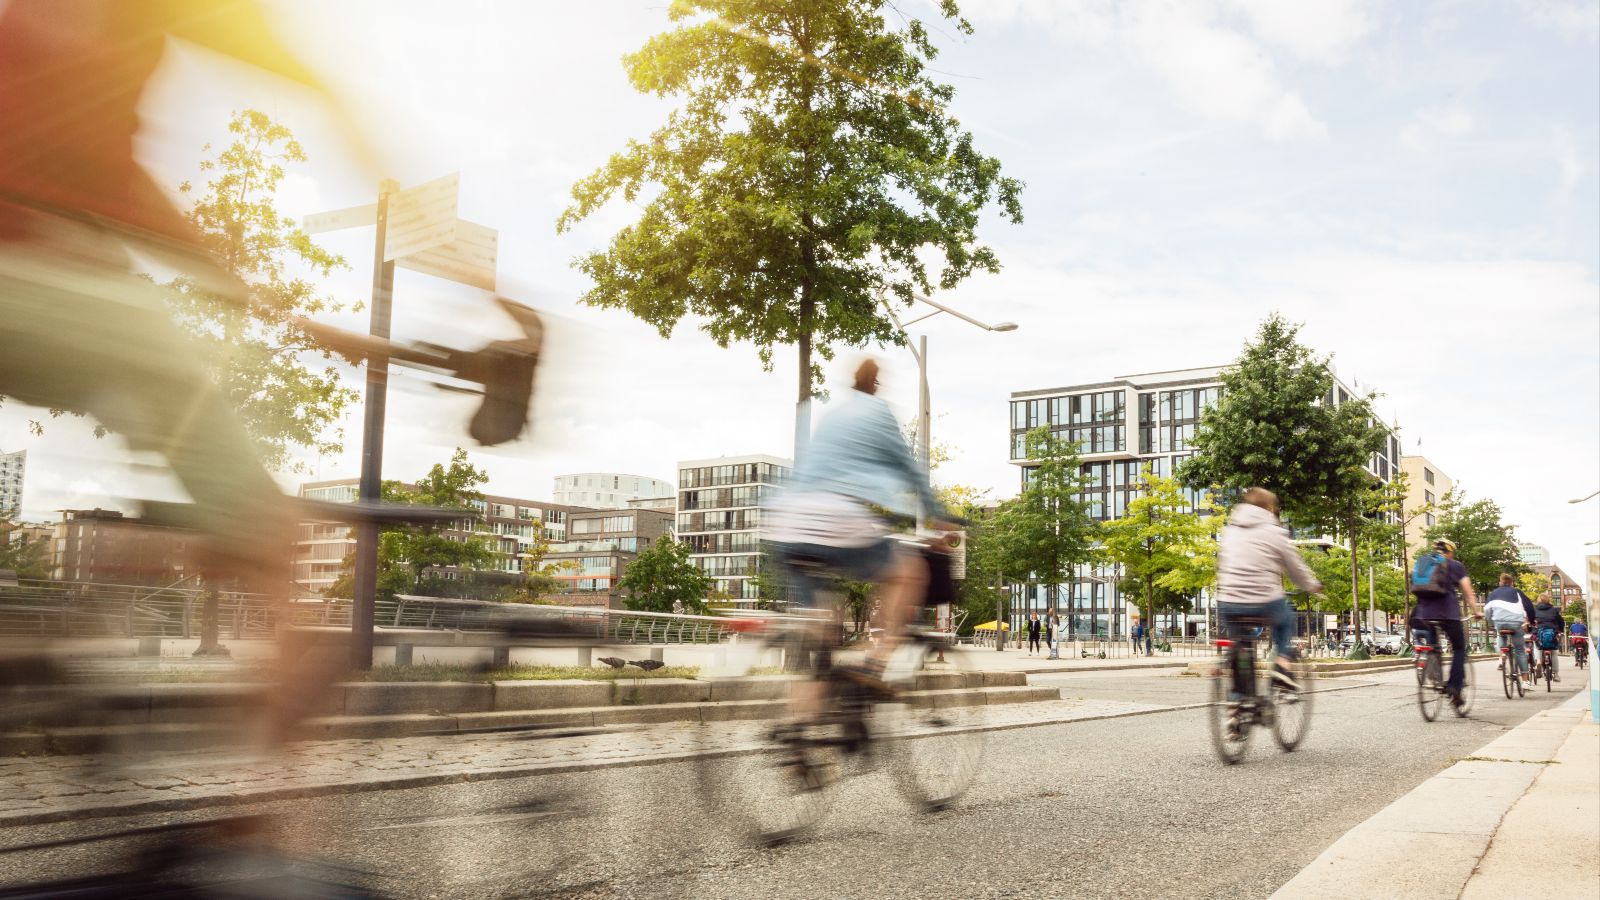 Mehrere Fahrradfahrer fahren hintereinander auf einem Fahrradweg in einer Stadt. Im Hintergrund sind Häuser und Bäume zu sehen.